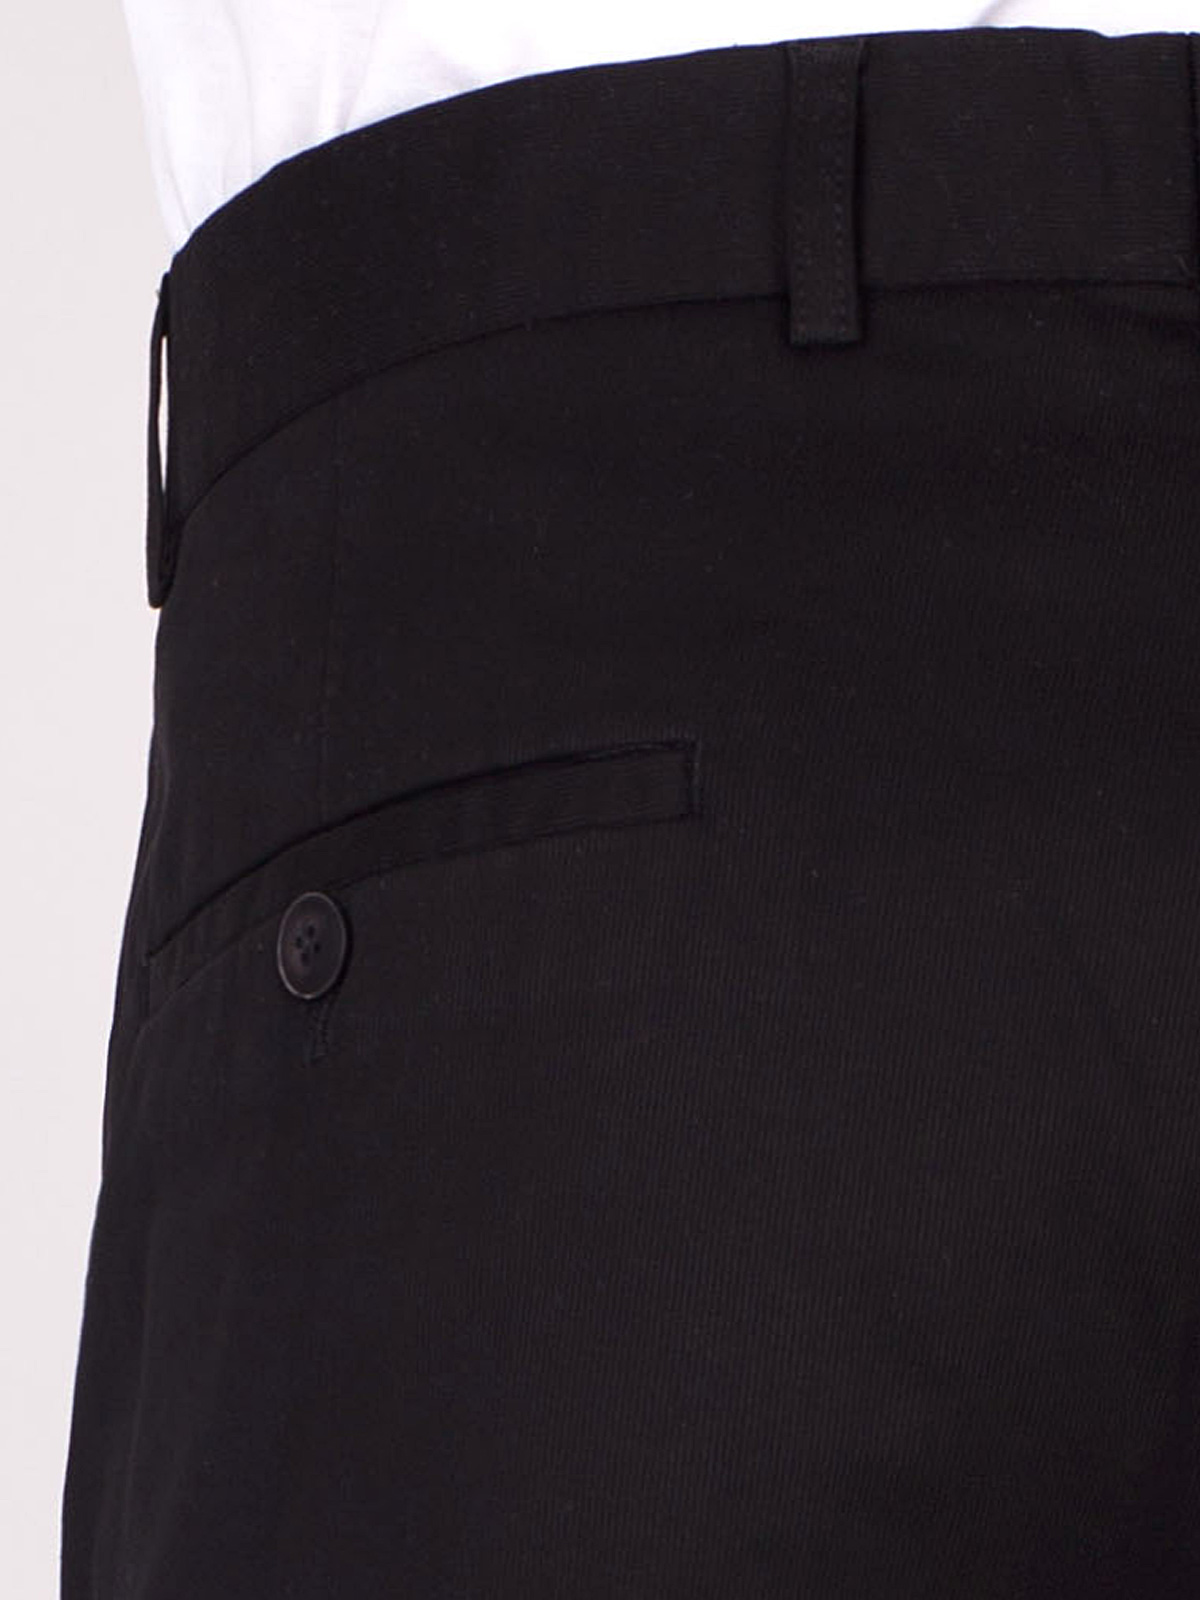 Черен втален панталон от памук - 60275 25.00 лв img3